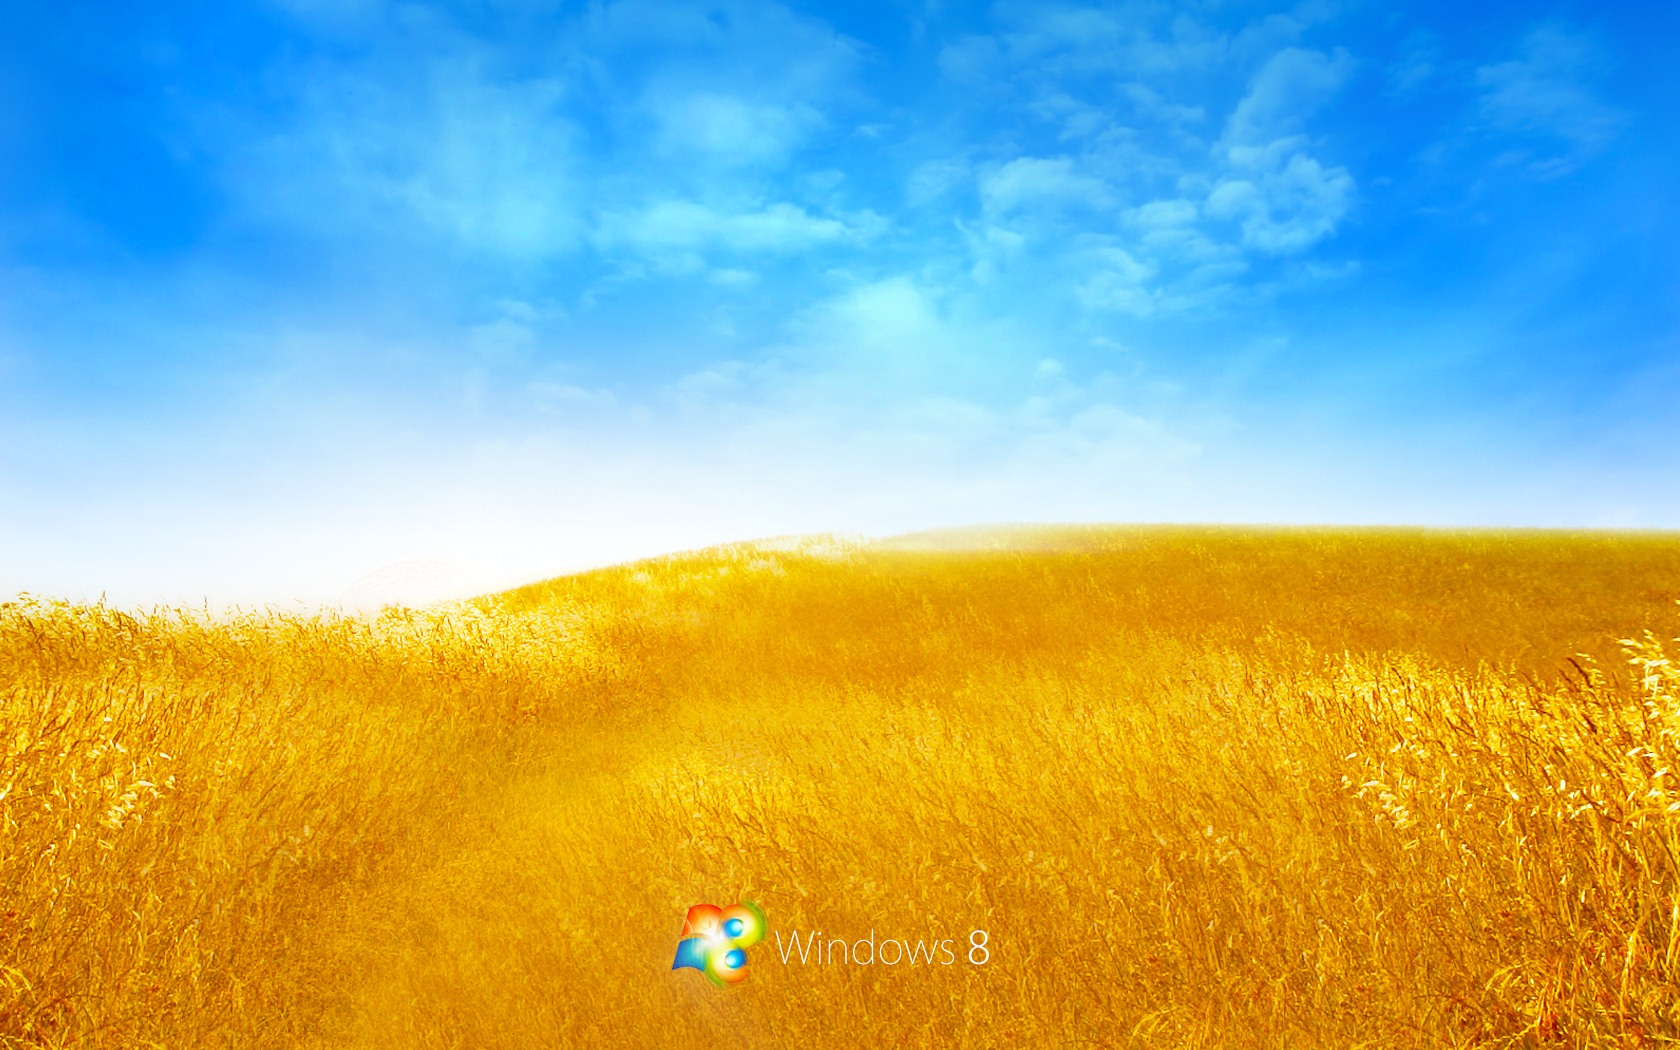 Windows 8 Theme Wallpaper (2) #16 - 1680x1050